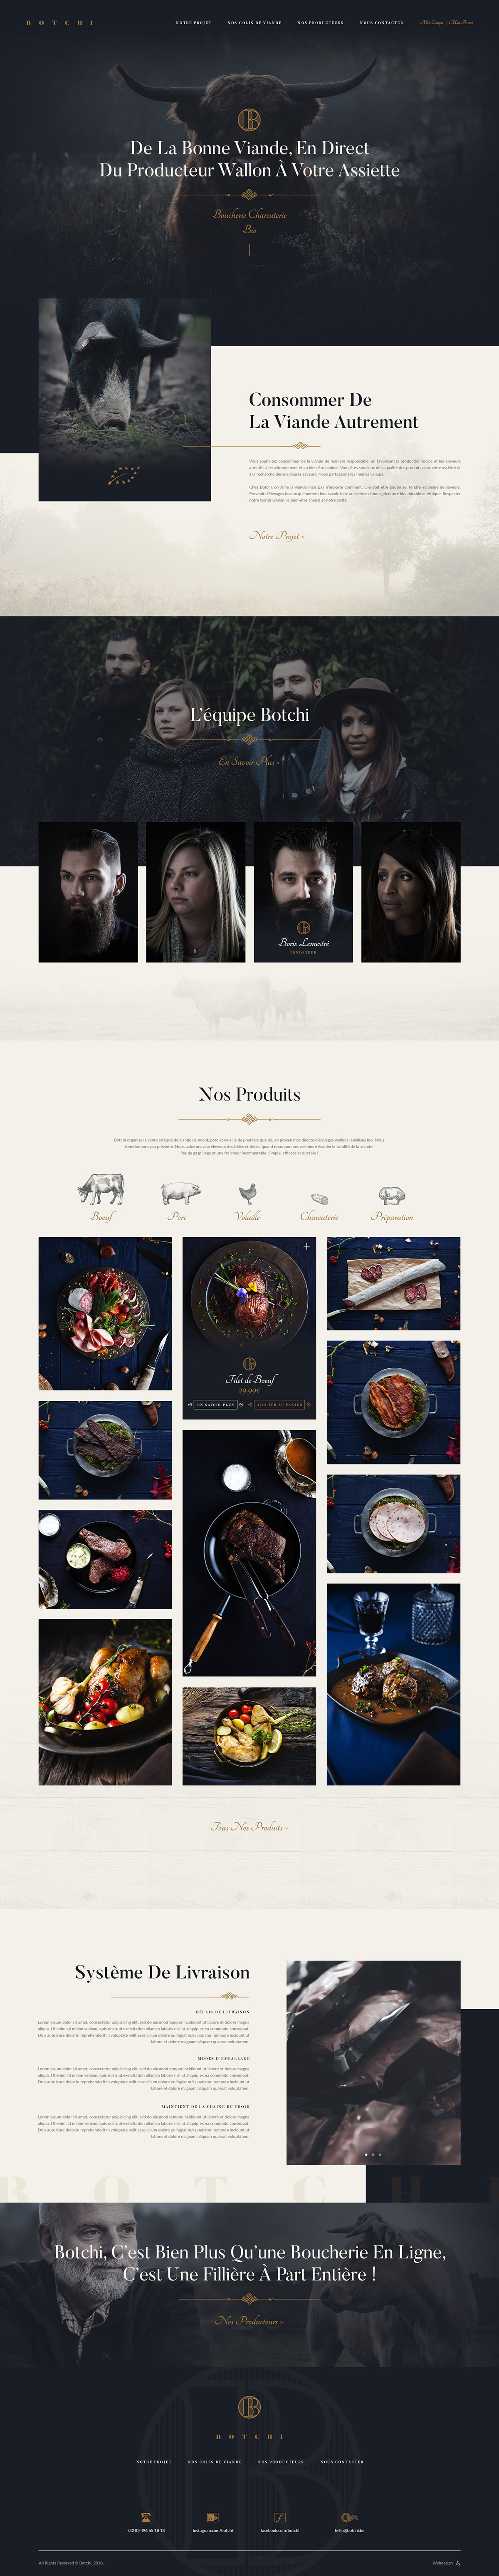 餐饮美食类网页这样设计能更具高级感